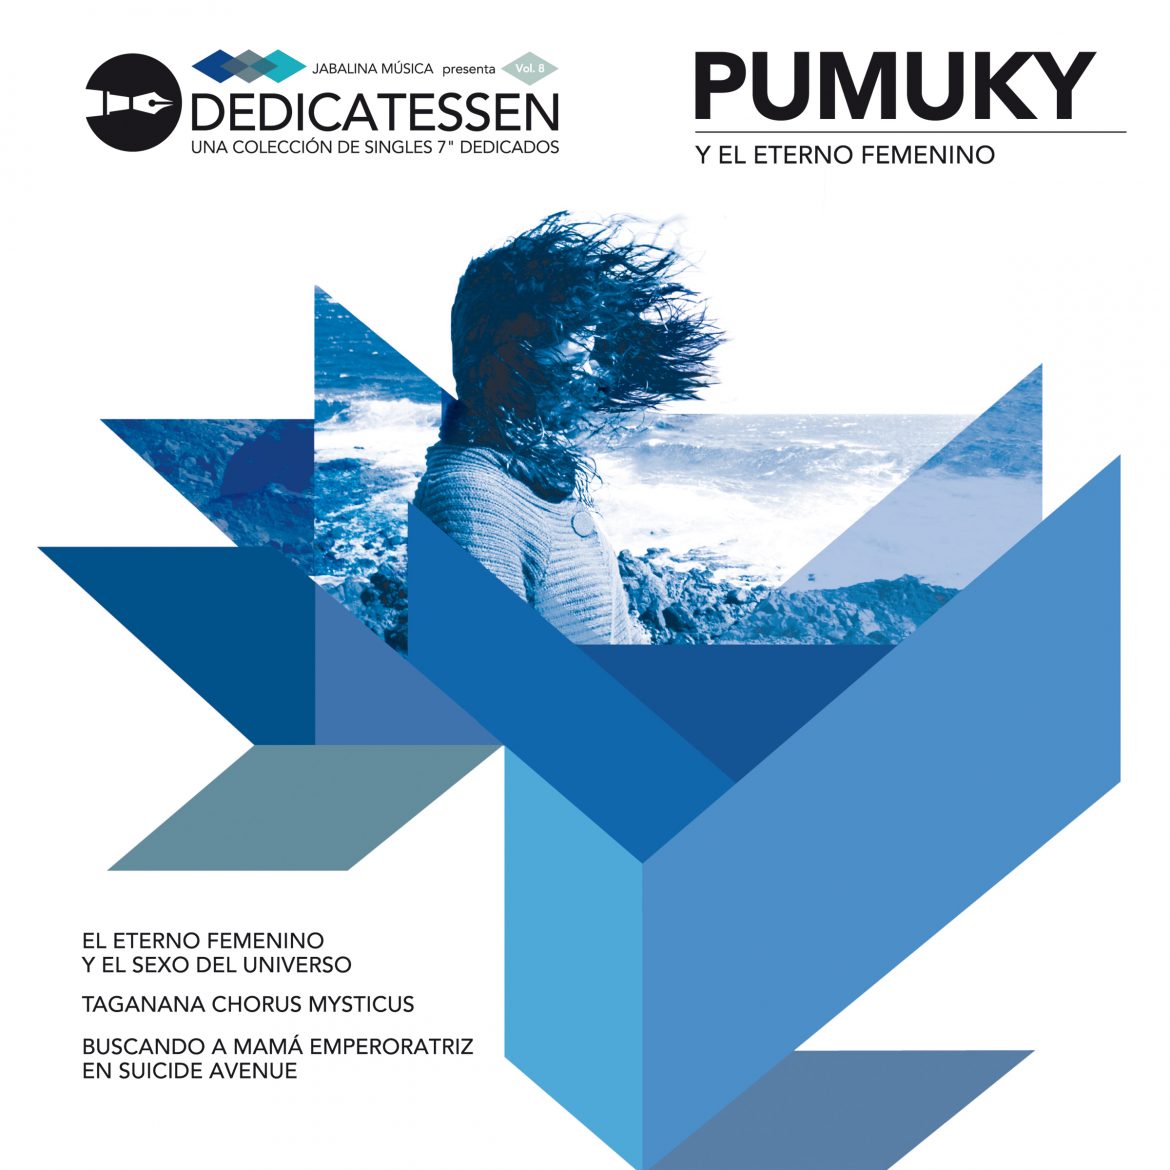 Pumuky "Pumuky y el eterno femenino" enero-2013 Jabalina portada